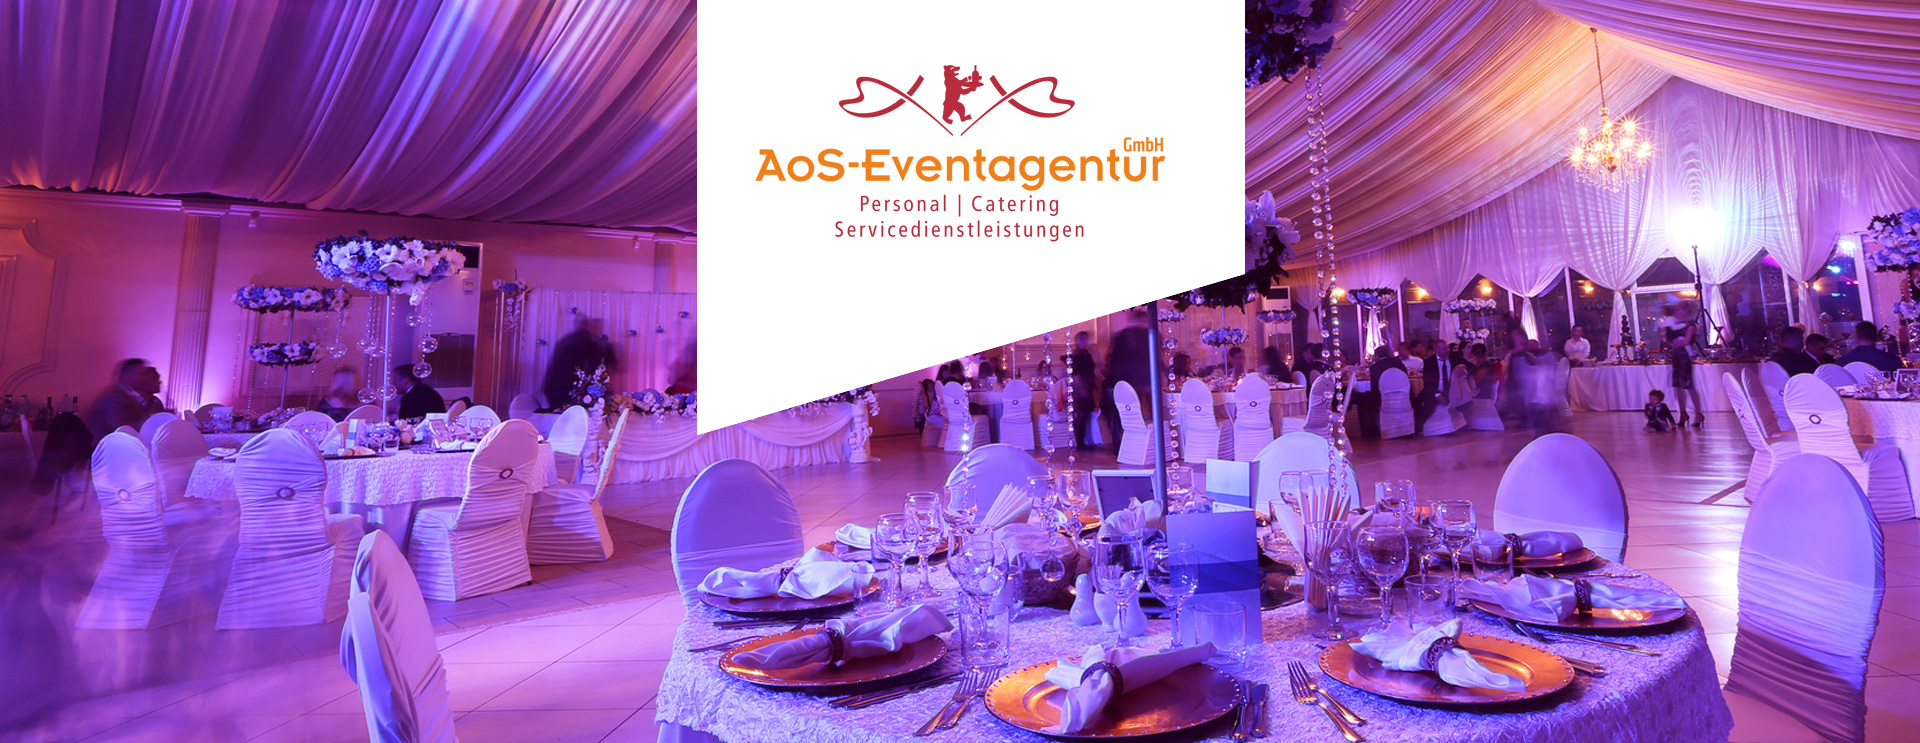 head AoS Eventagentur catering servicedienstleistungen